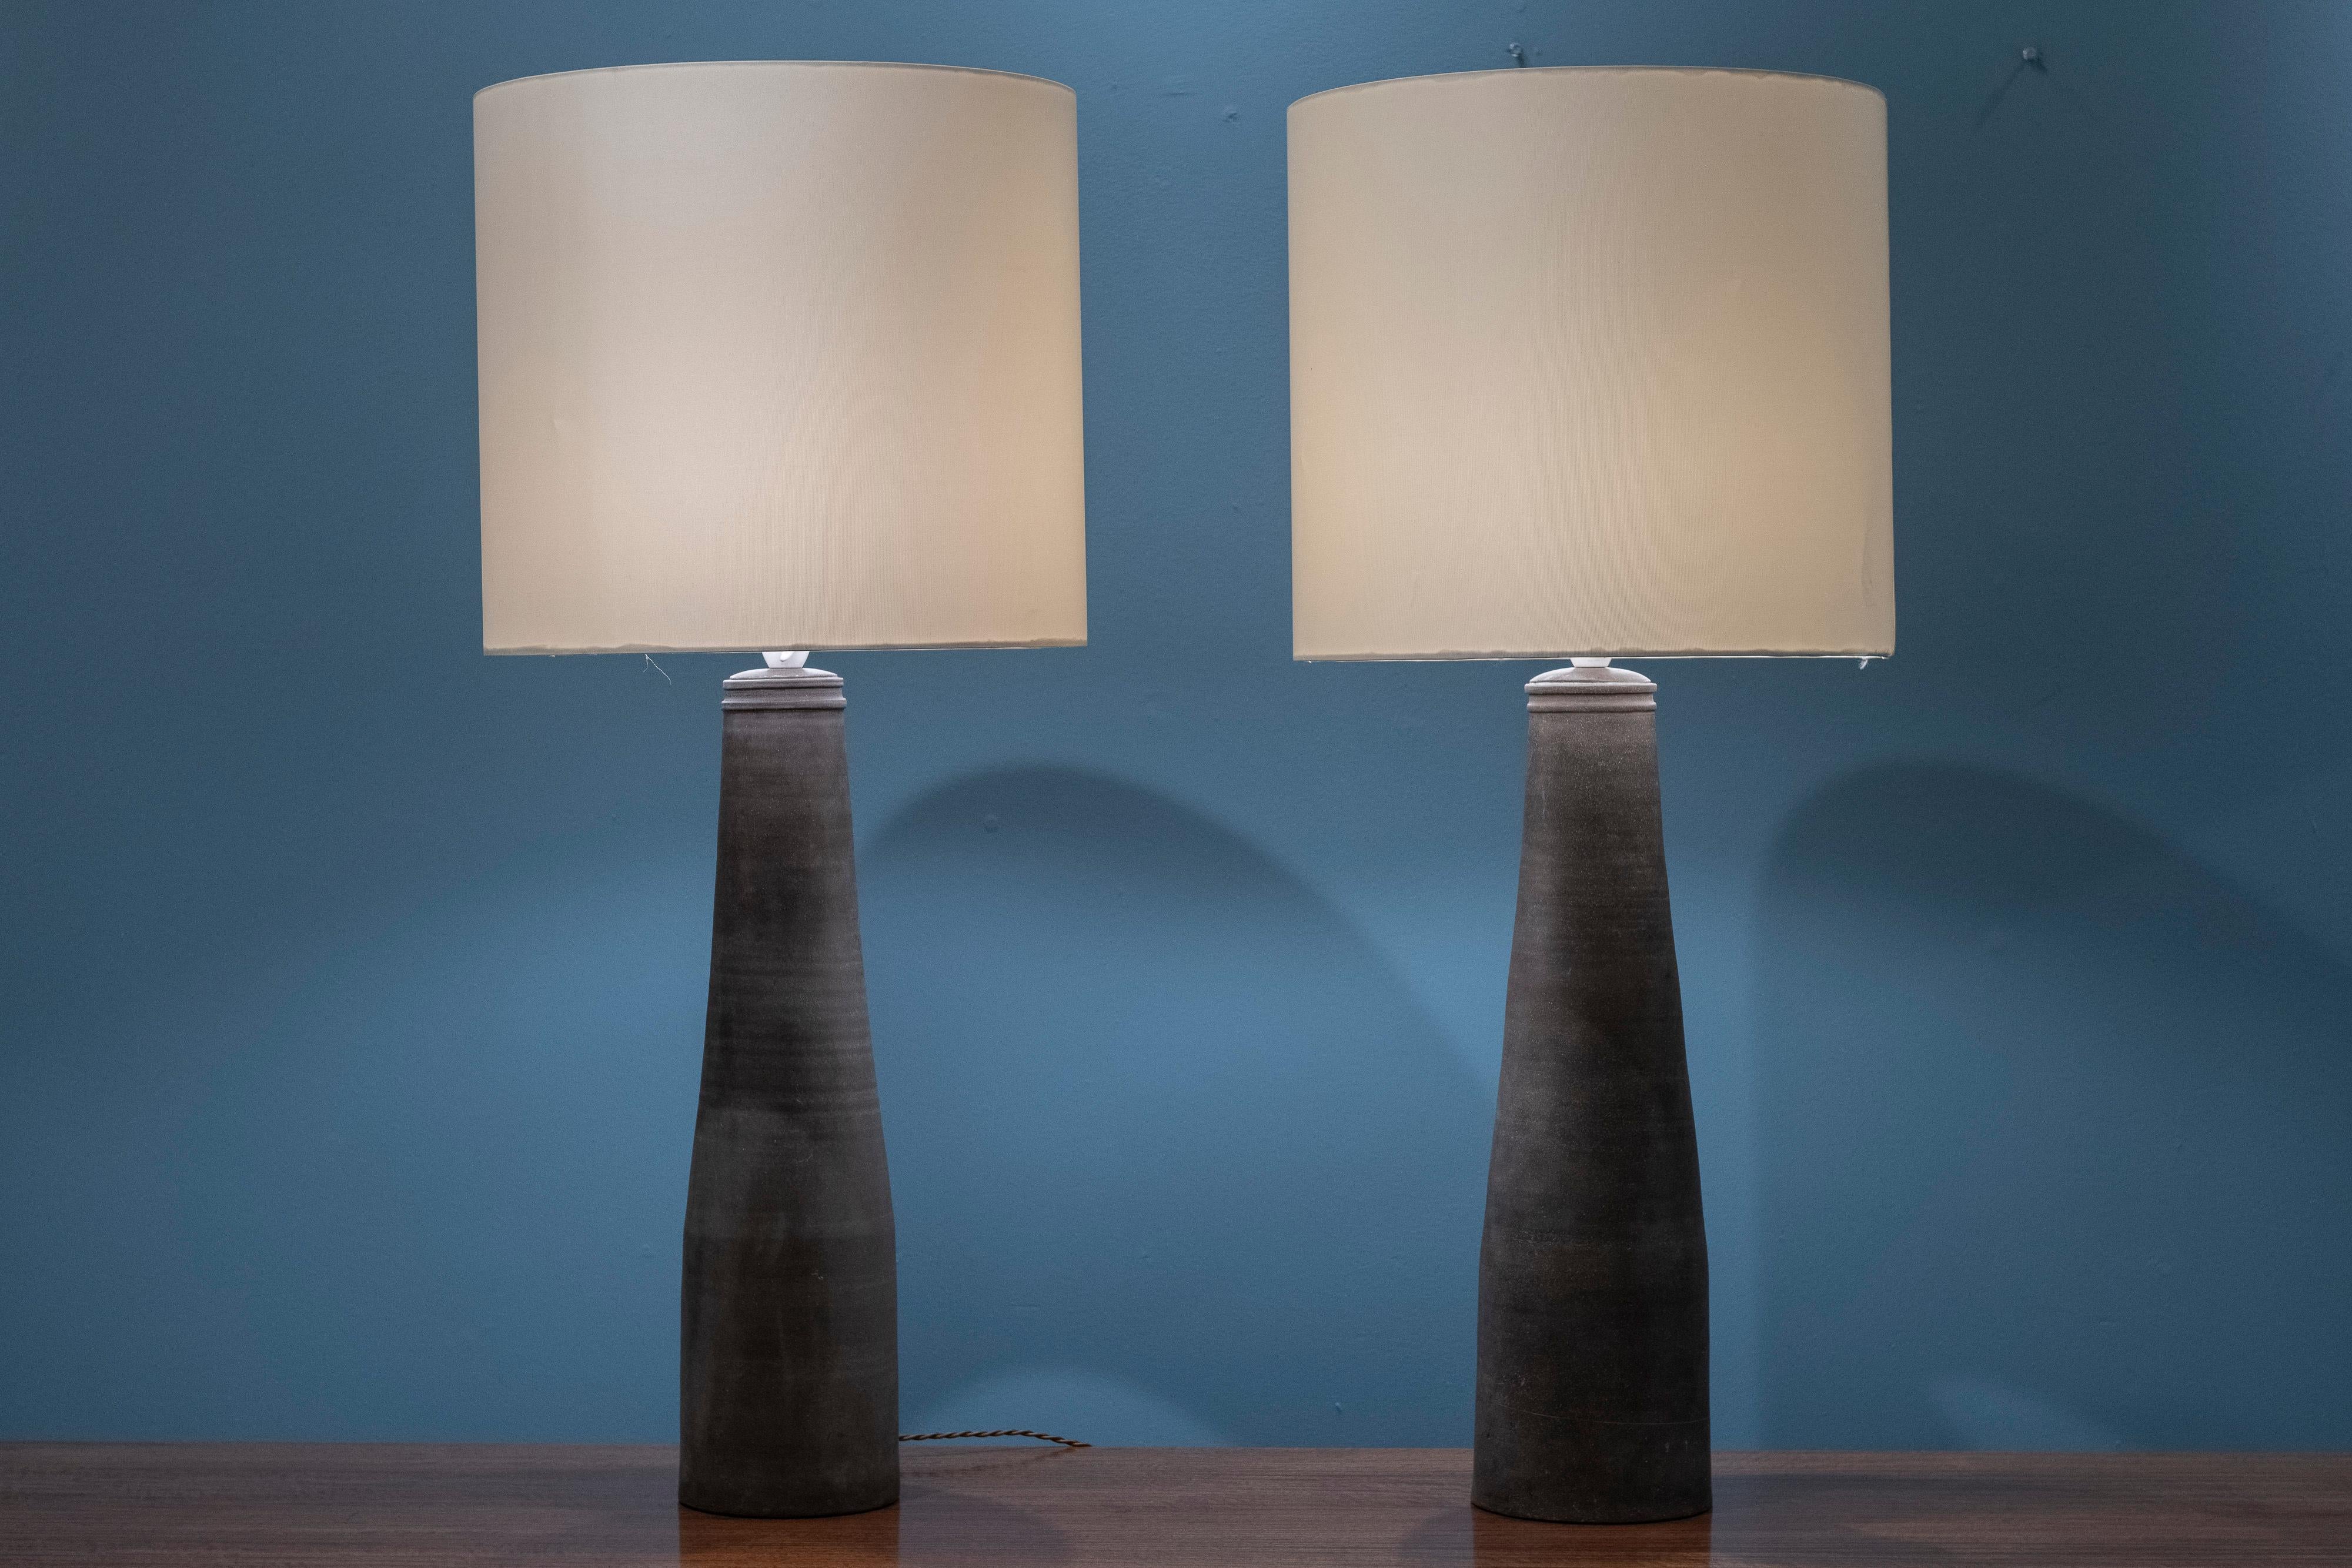 Nils Kahler entwirft Keramik-Tischlampen für Herman A Kahler, Dänemark. Beeindruckendes und großformatiges Lampenpaar, organische und unvollkommene Form, die umwerfend ist. Seltenes Modell in sehr gutem Originalzustand mit neuer Verkabelung und